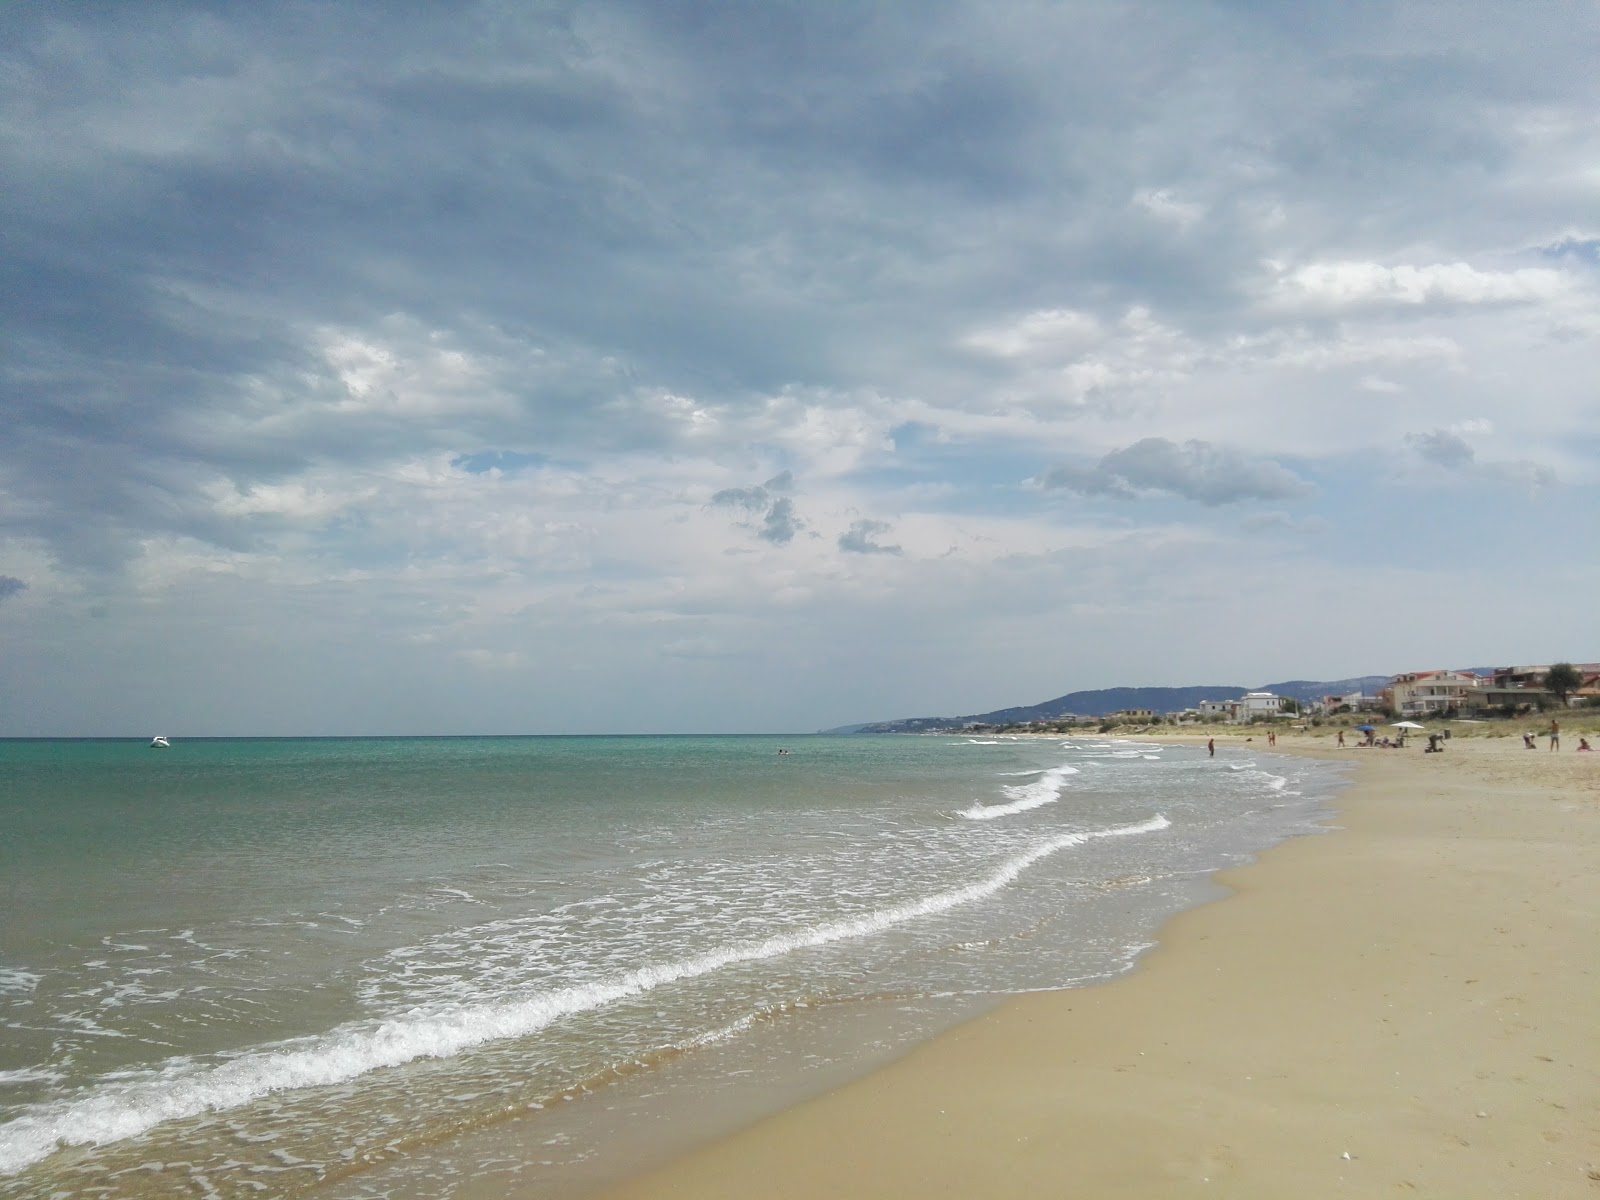 Spiaggia di Foce Varano'in fotoğrafı çok temiz temizlik seviyesi ile